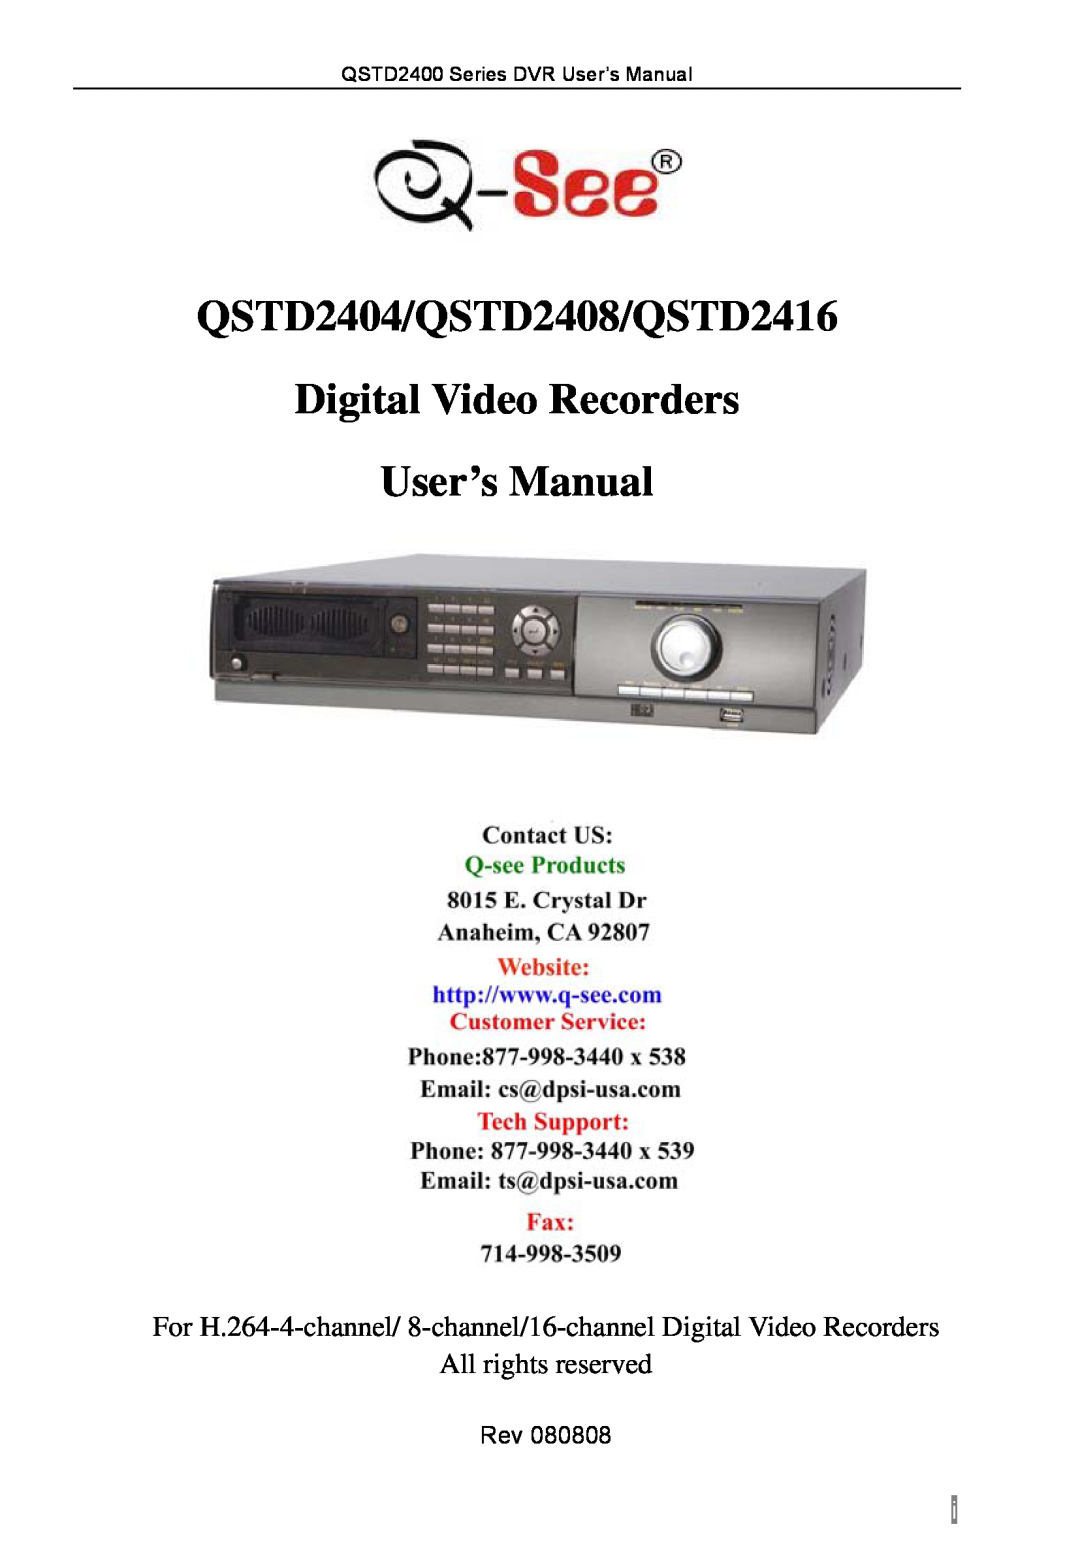 Q-See user manual QSTD2404/QSTD2408/QSTD2416, Digital Video Recorders User’s Manual, All rights reserved 